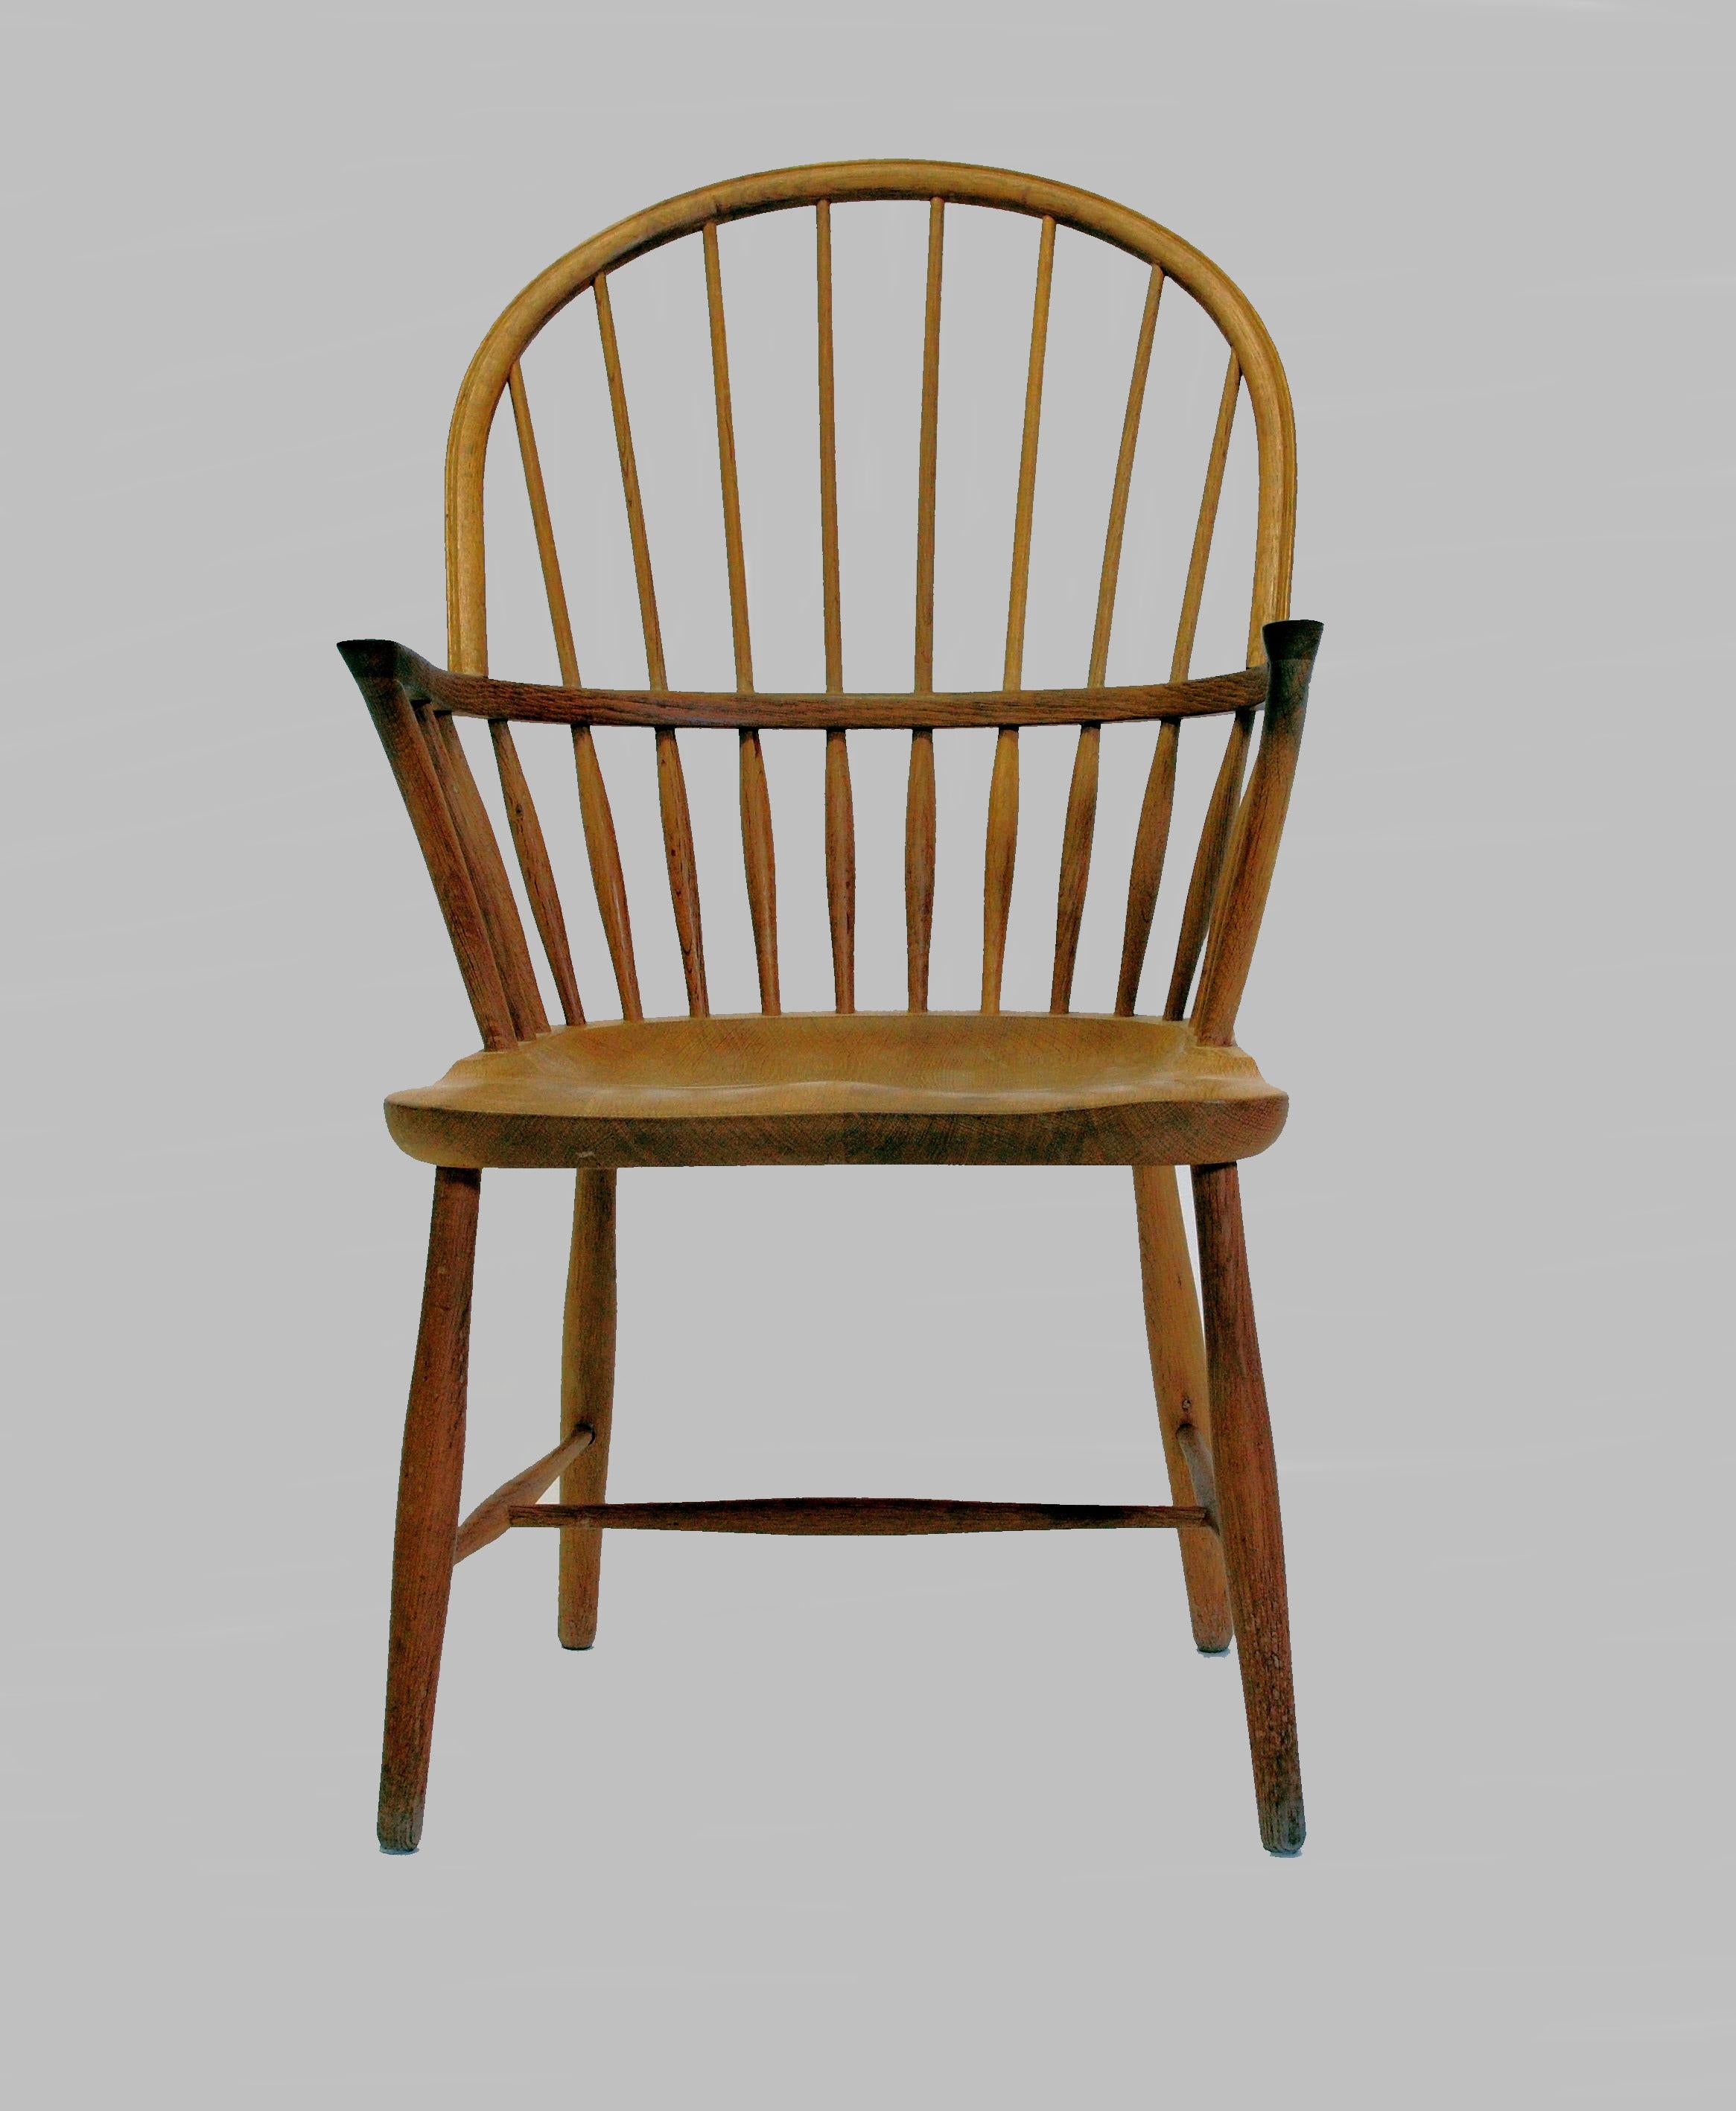 CH 18A Windsor-Stuhl mit hoher Rückenlehne aus Eiche, entworfen von Frits Henningsen und hergestellt von Carl Hansen & Søn. 

Der Stuhl zeichnet sich durch die handwerkliche Kunstfertigkeit der Tischler aus. Mit seiner halbrunden Rückenlehne, die